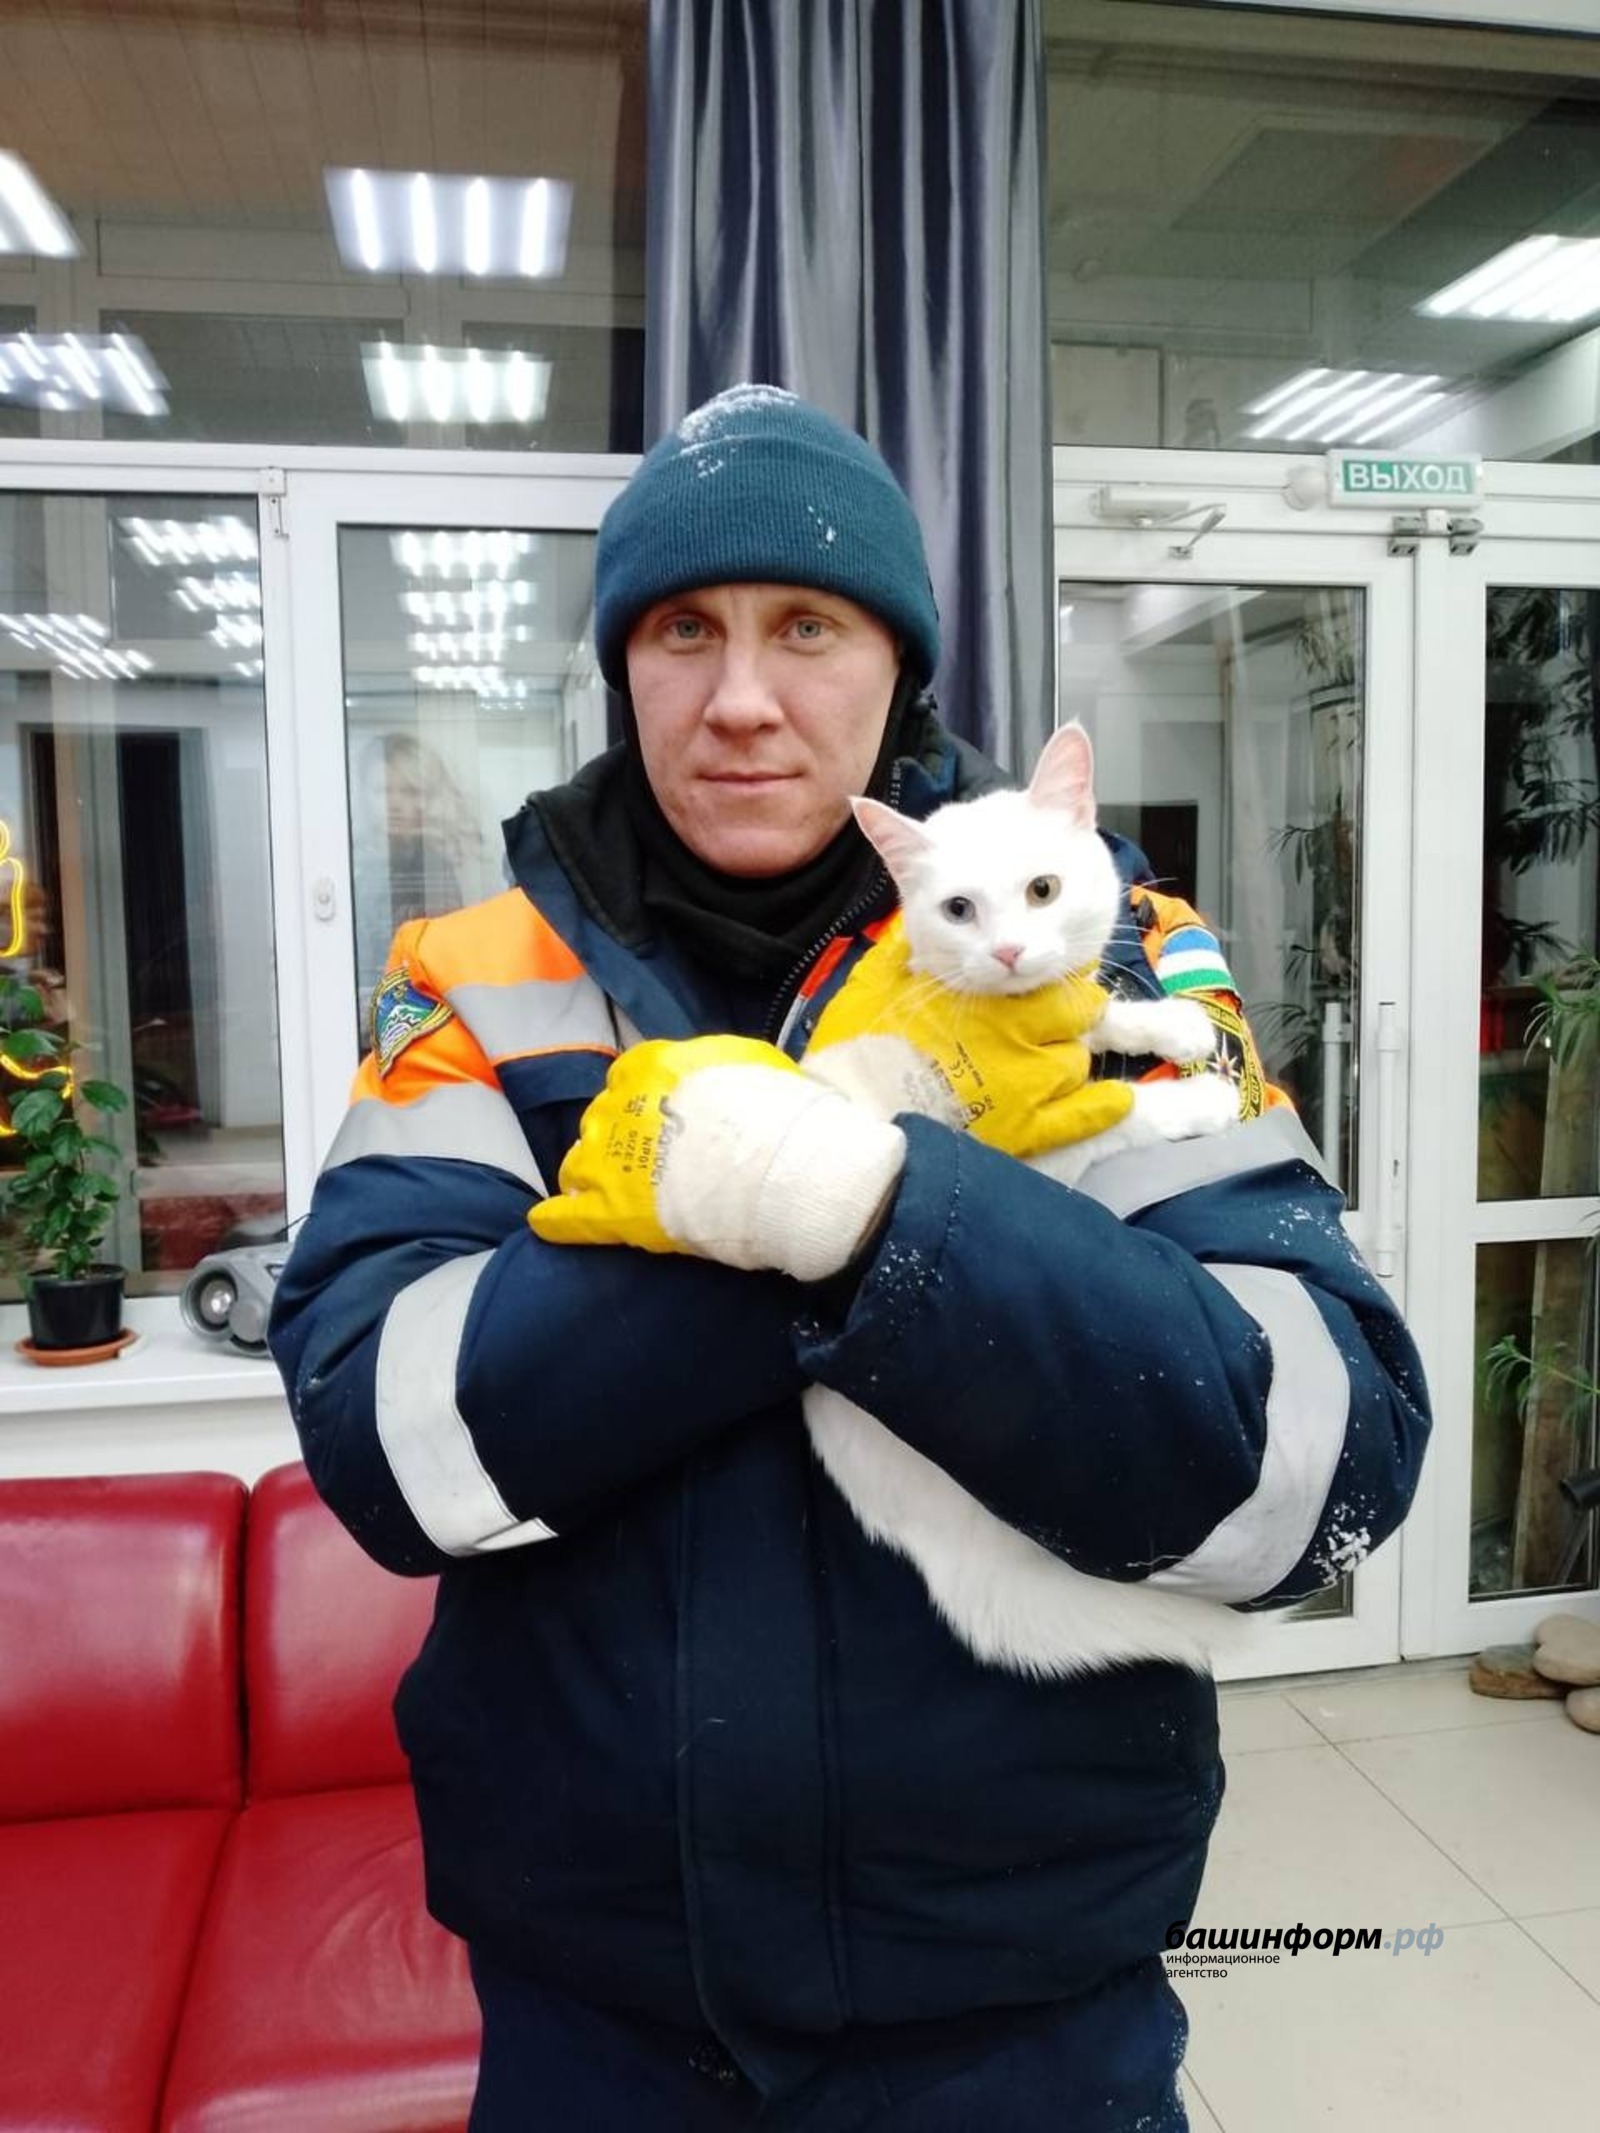 В Башкирии спасатели освободили застрявшего между двумя зданиями кота